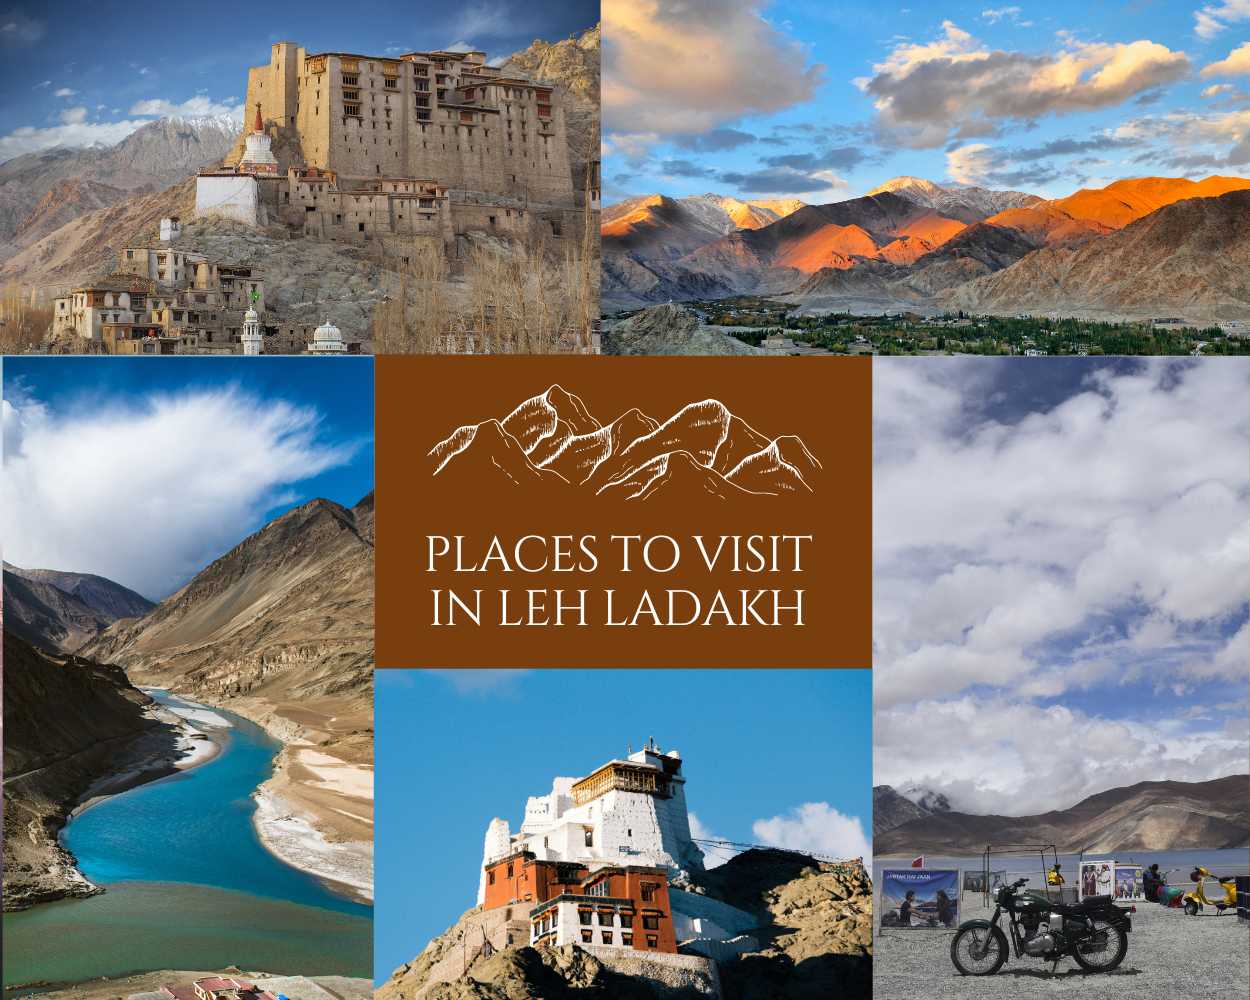 ladakh tourism advisory